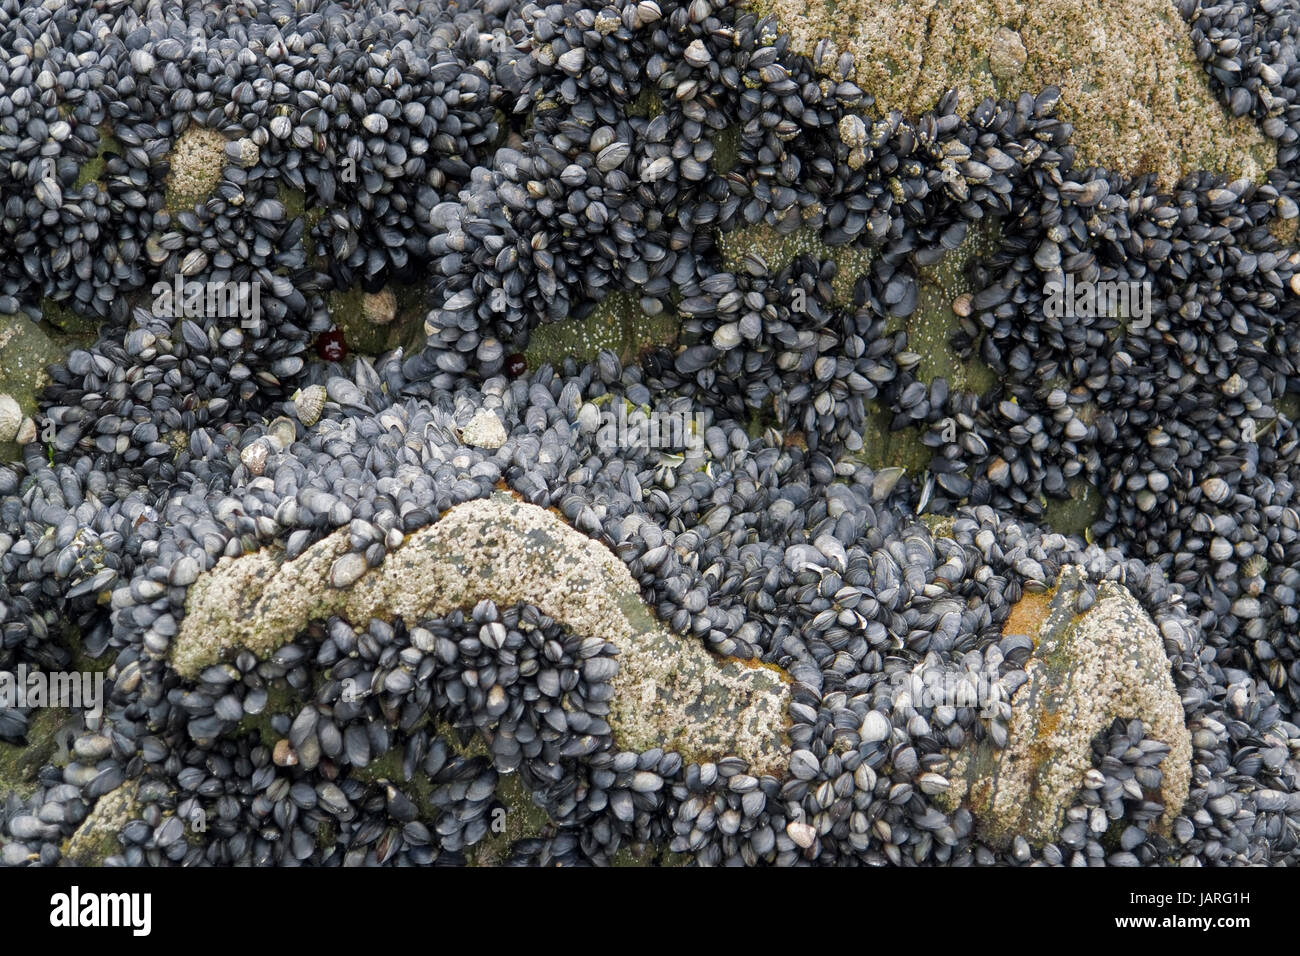 viele Muscheln und Seepocken auf einer Felsformation in der Bretagne, Frankreich Stockfoto